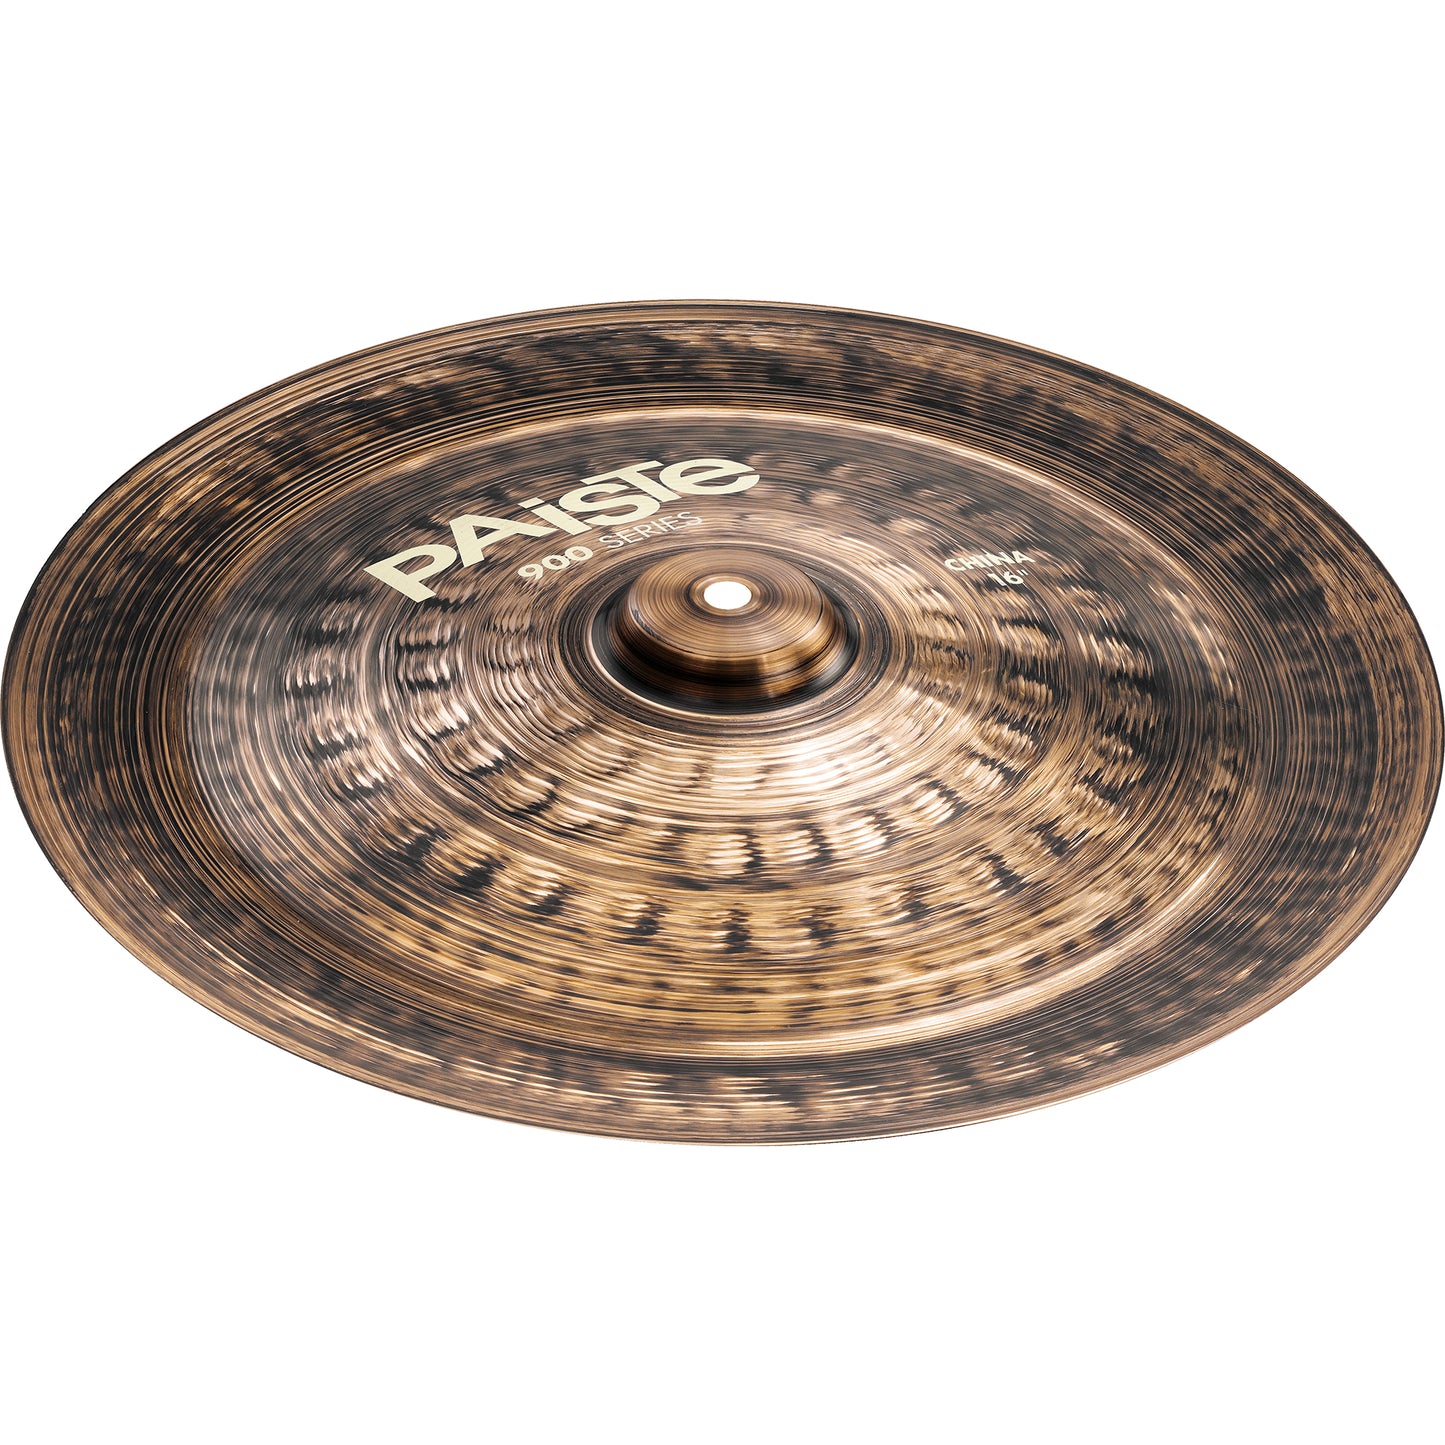 Paiste 16” 900-Series China Cymbal